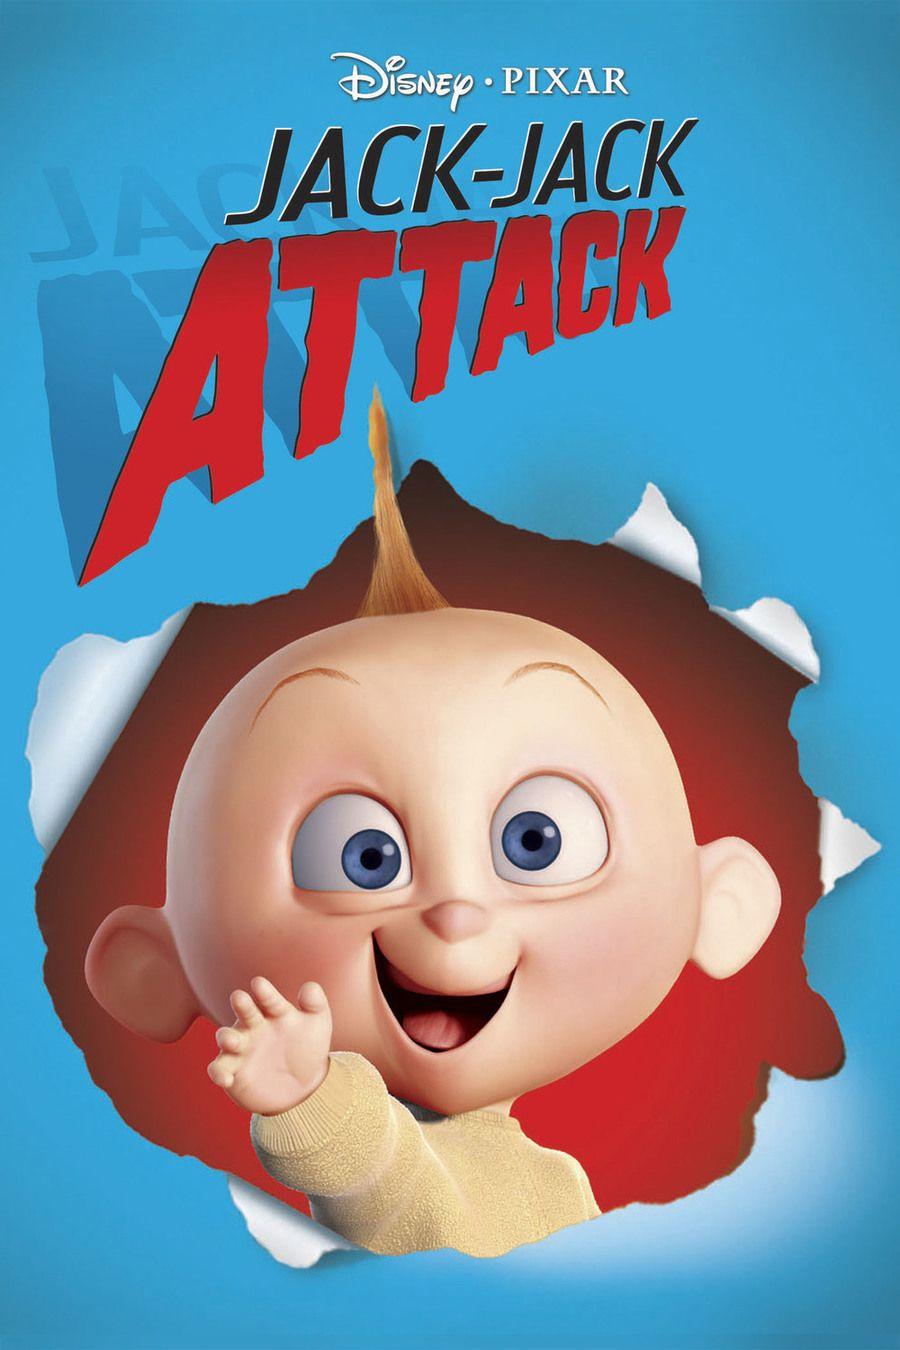 Download Jack Jack Clipart Jack Jack Attack Jack Jack Parr Pixar